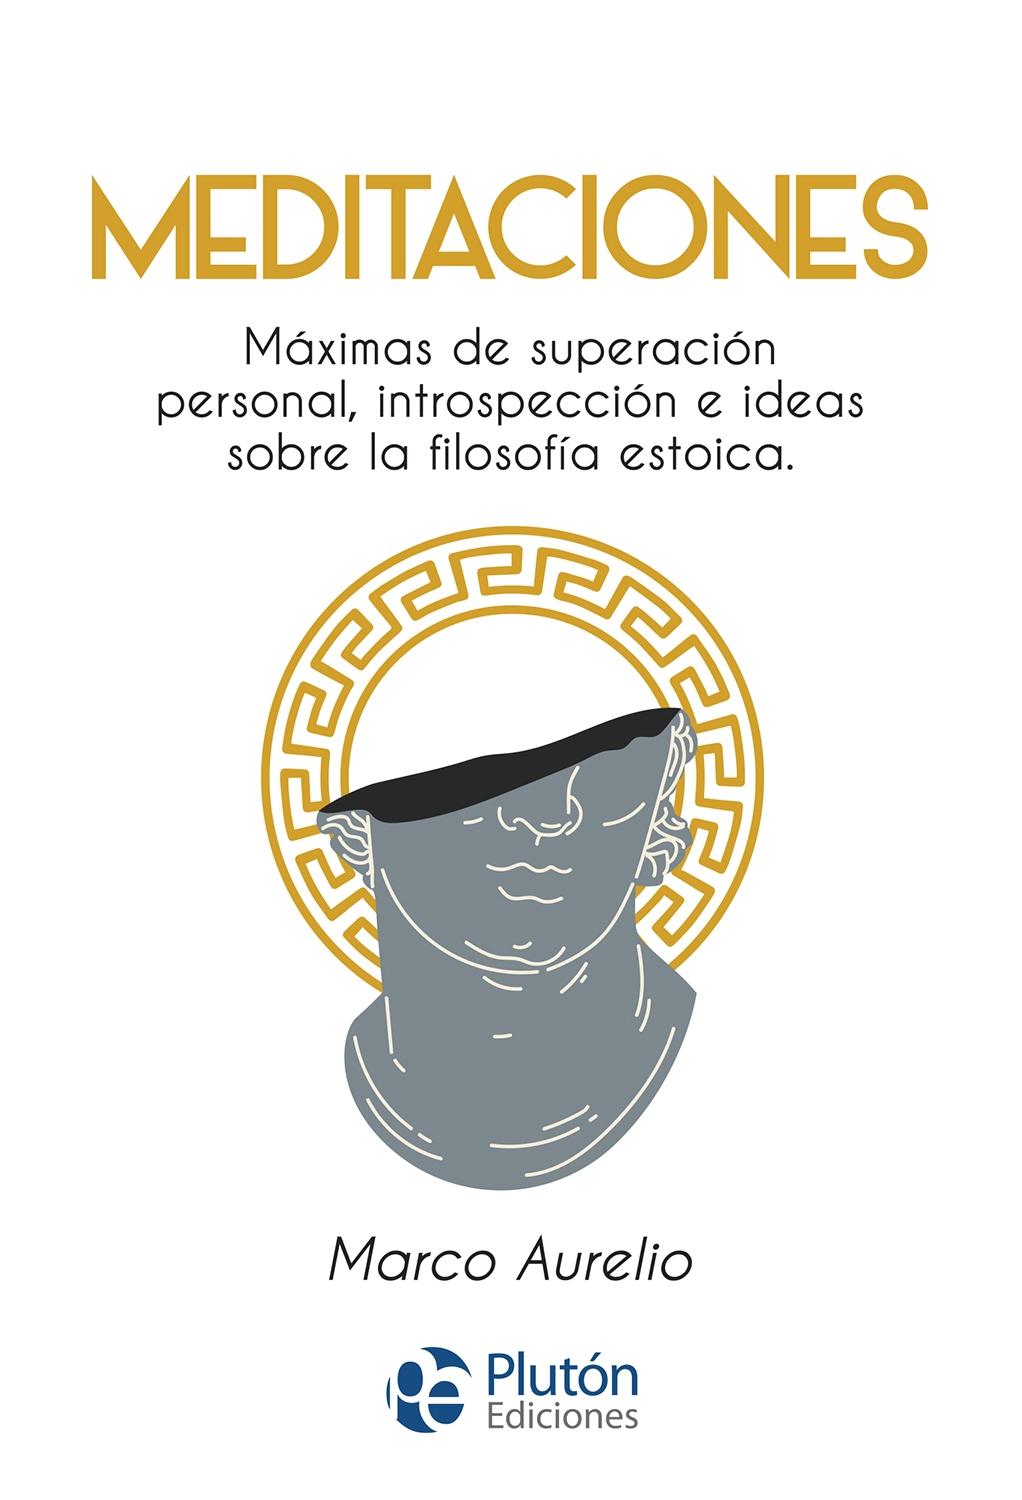 MEDITACIONES "MAXIMAS DE SUPERACION PERSONAL,INTROSPECCIÓN E IDEAS SOBRE LA FILOSOFIA ESTOICA". 